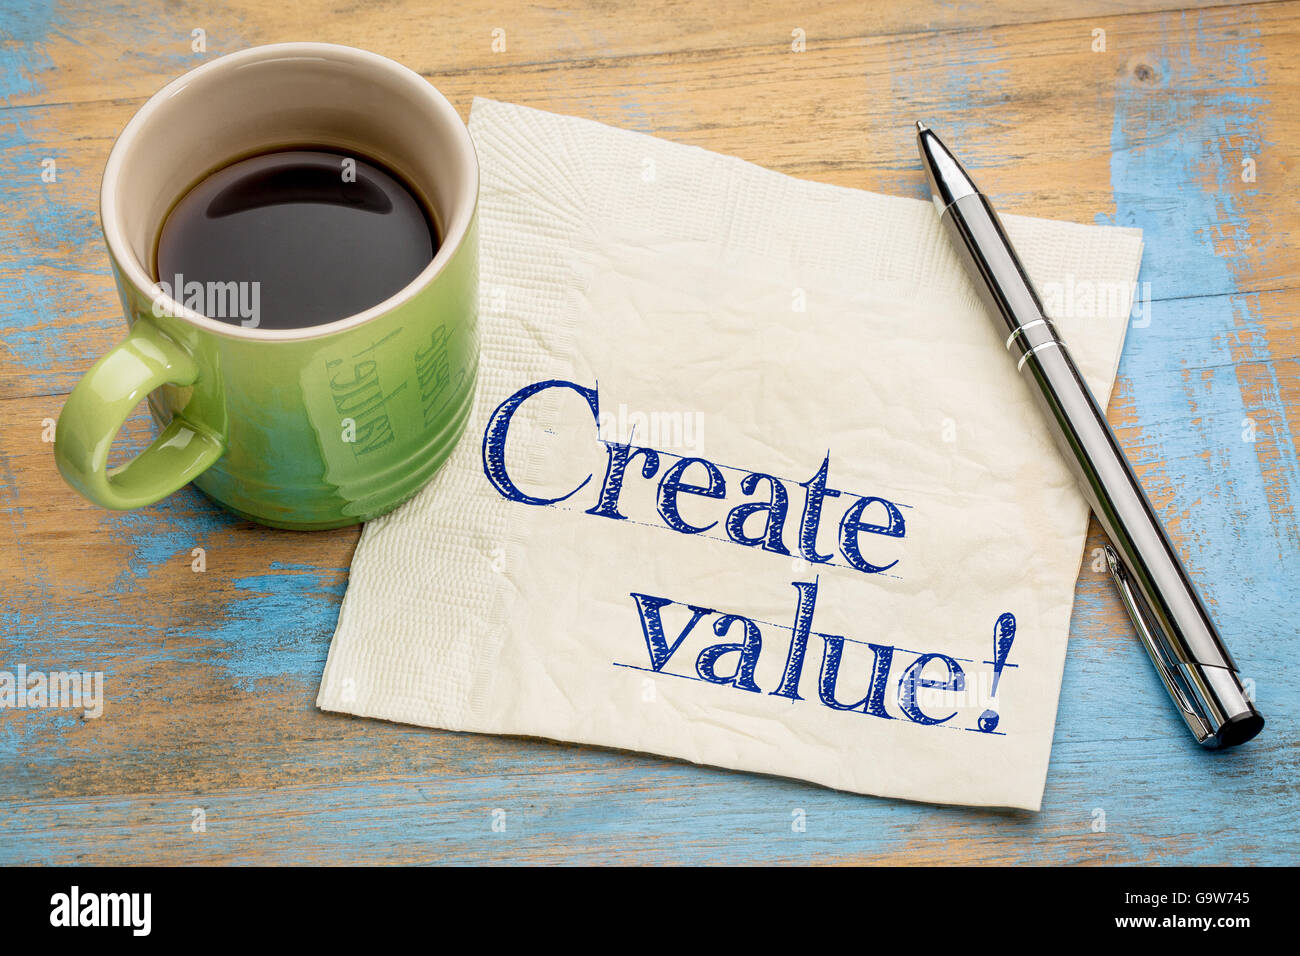 Creare valore di promemoria o consigli - ispirazione concetto - scrittura su un tovagliolo con una tazza di caffè Foto Stock